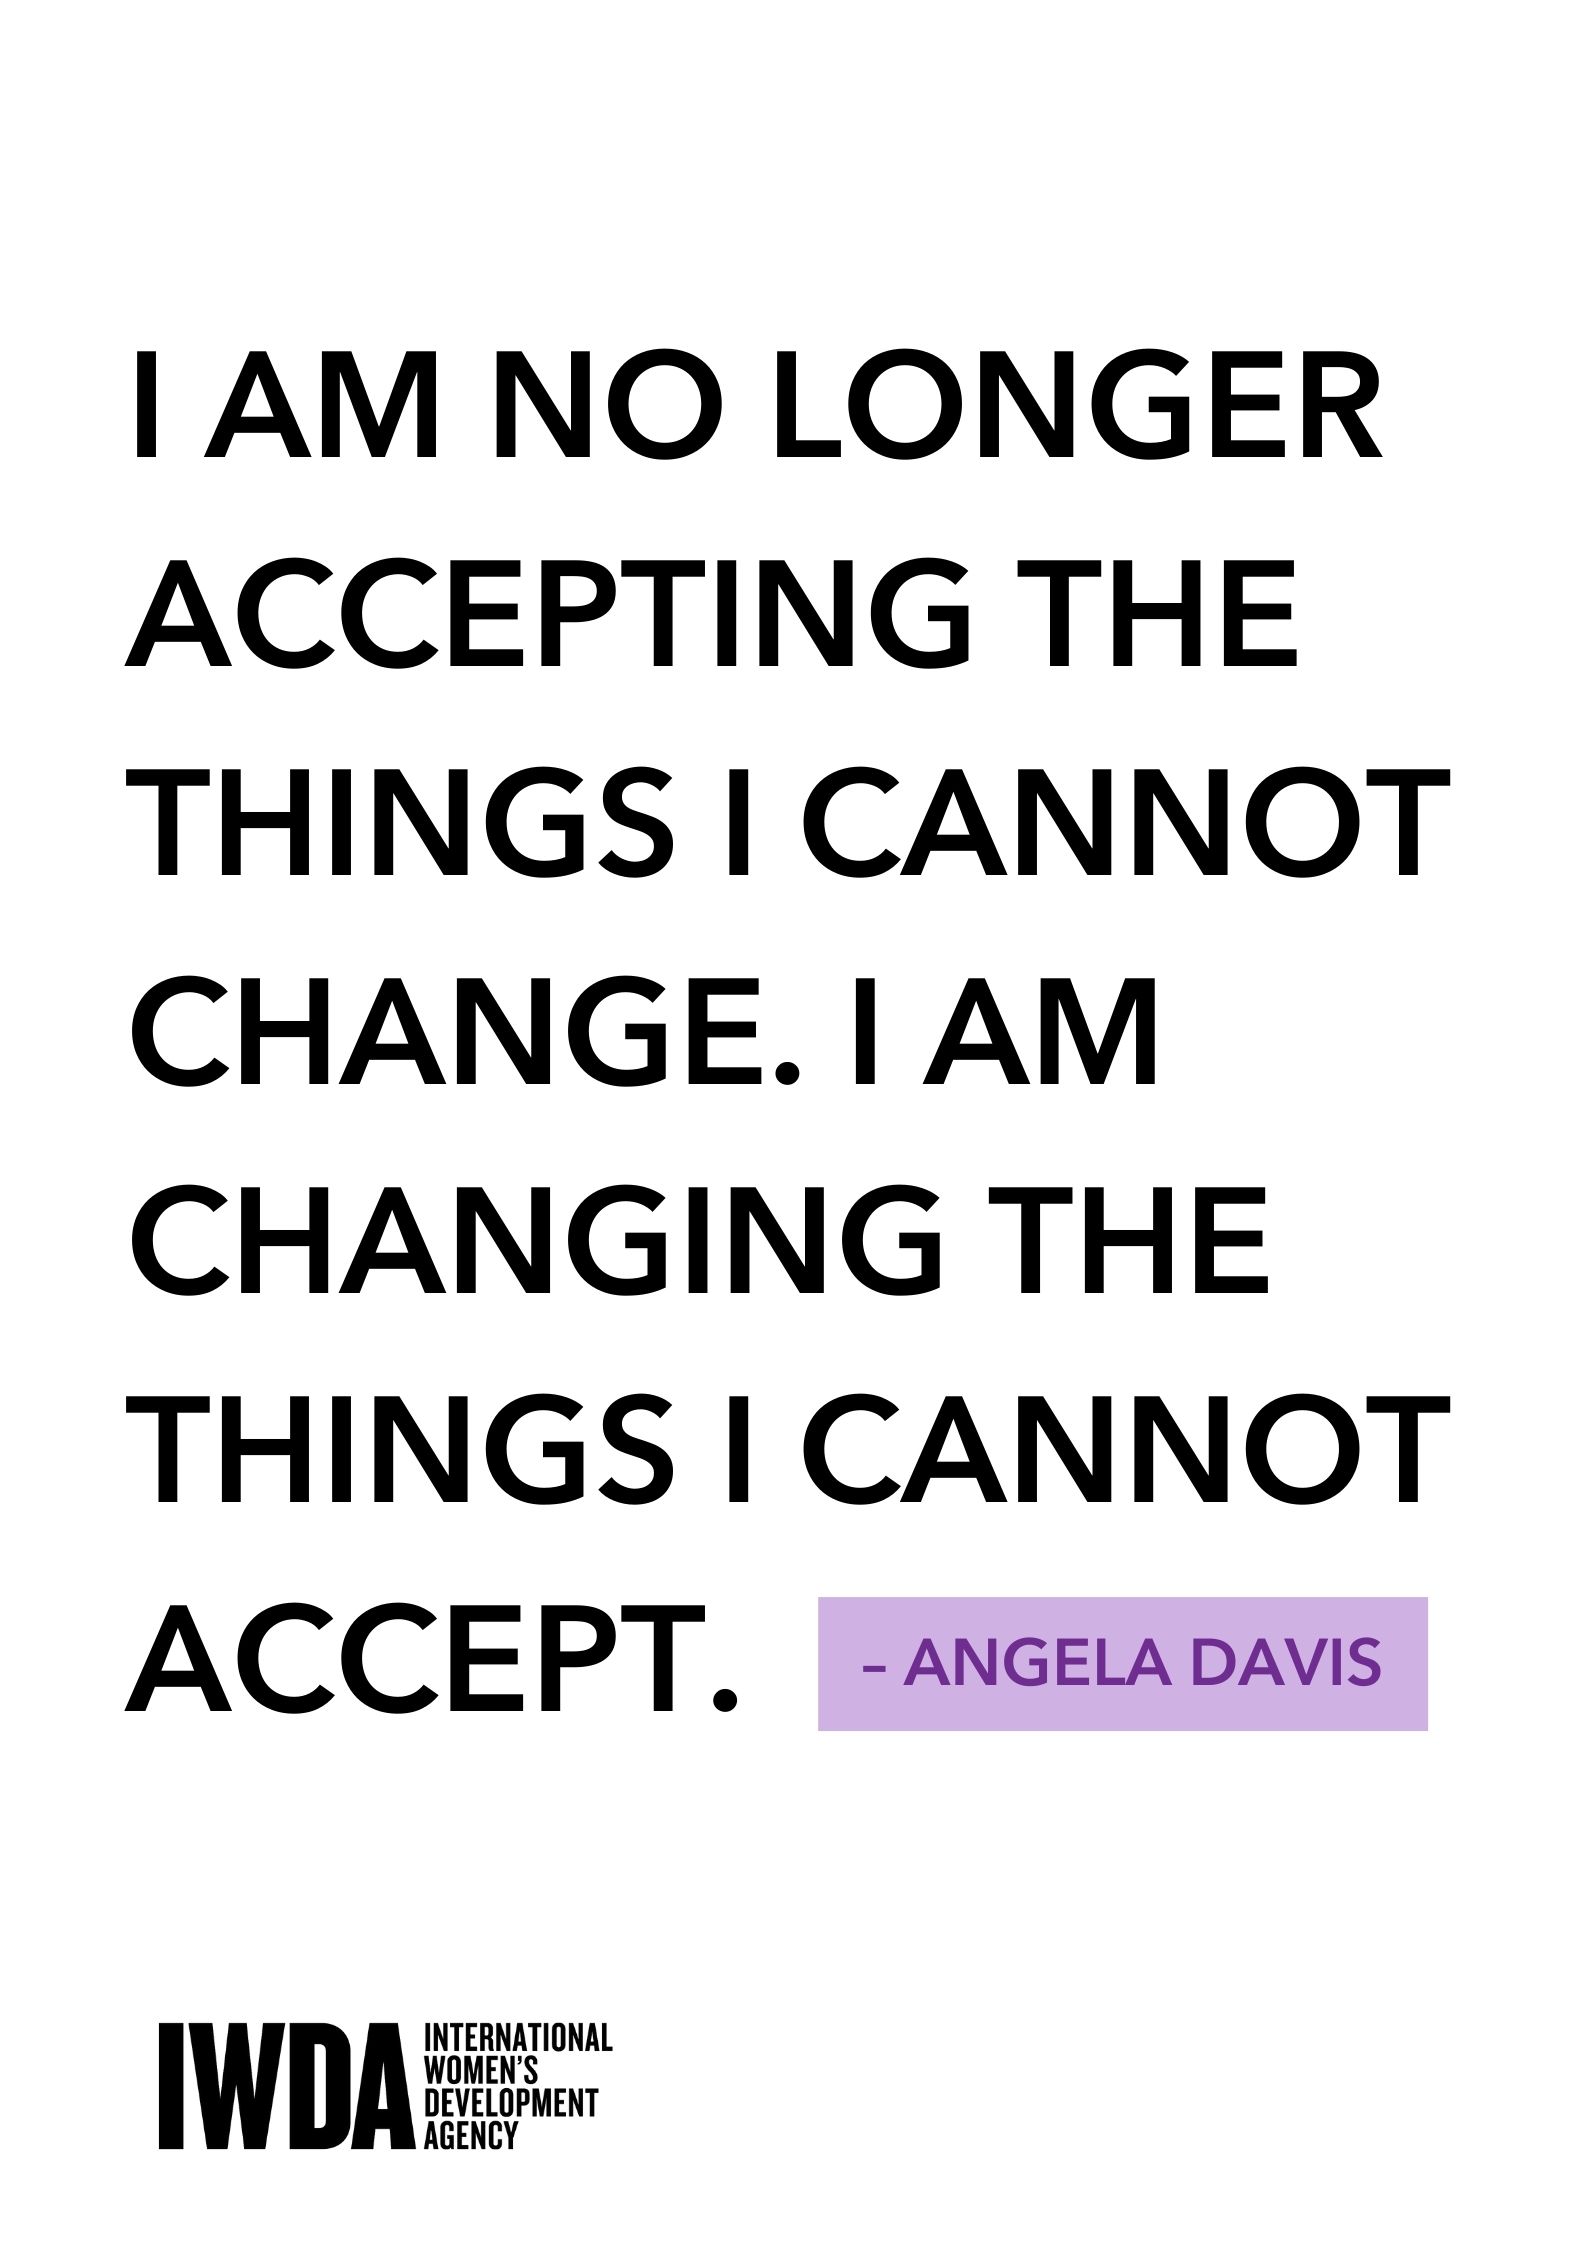 Angela Davis Quote